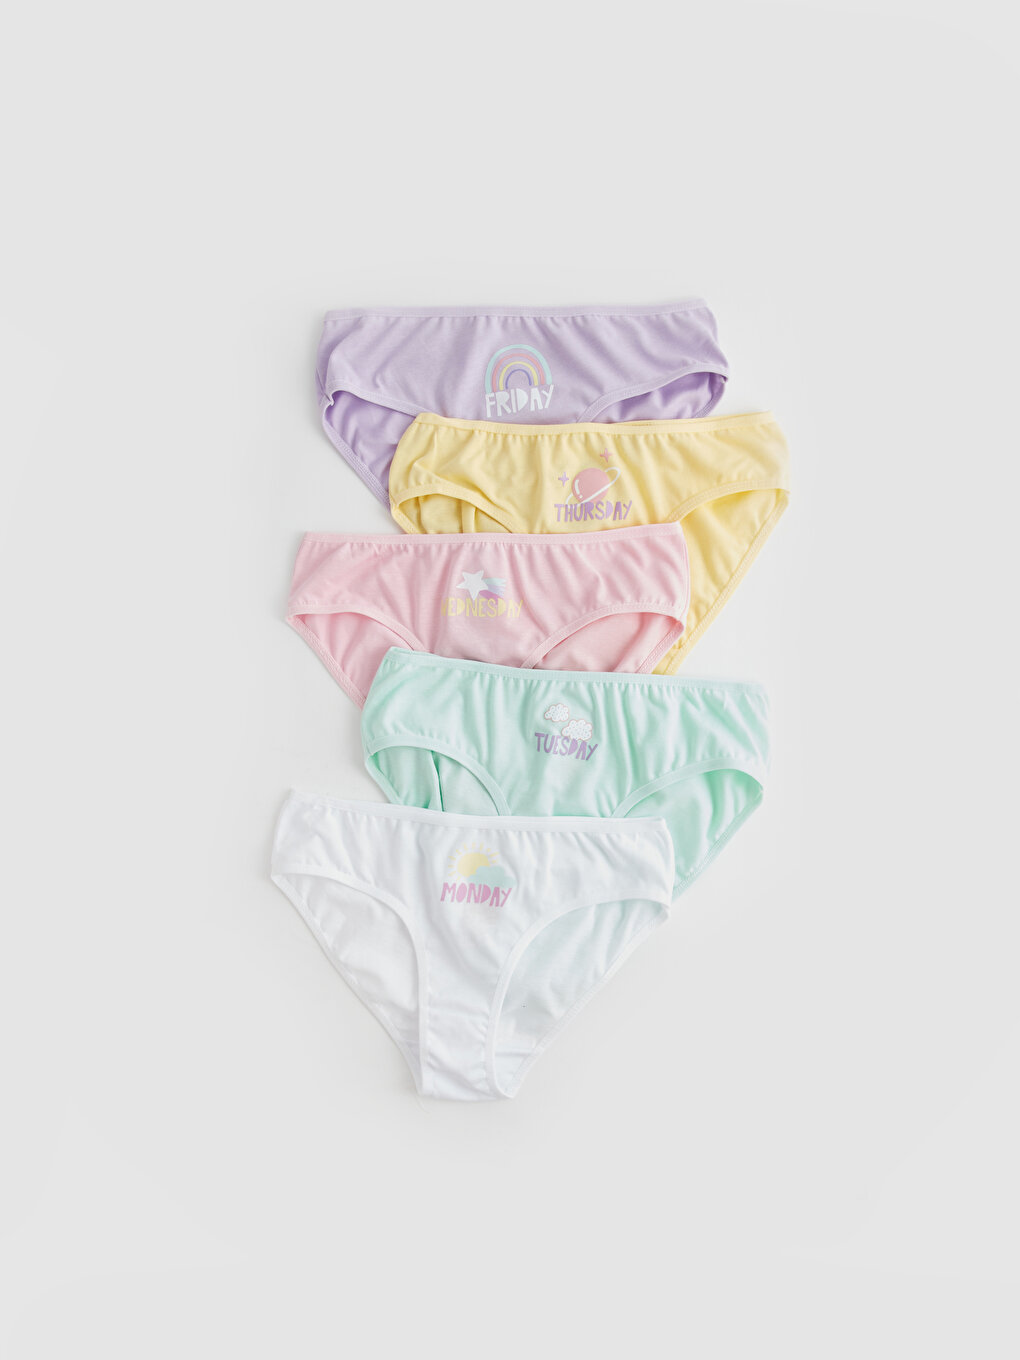 Printed Cotton Girls' Panties 5 Pack -W3AV47Z4-E5X - W3AV47Z4-E5X